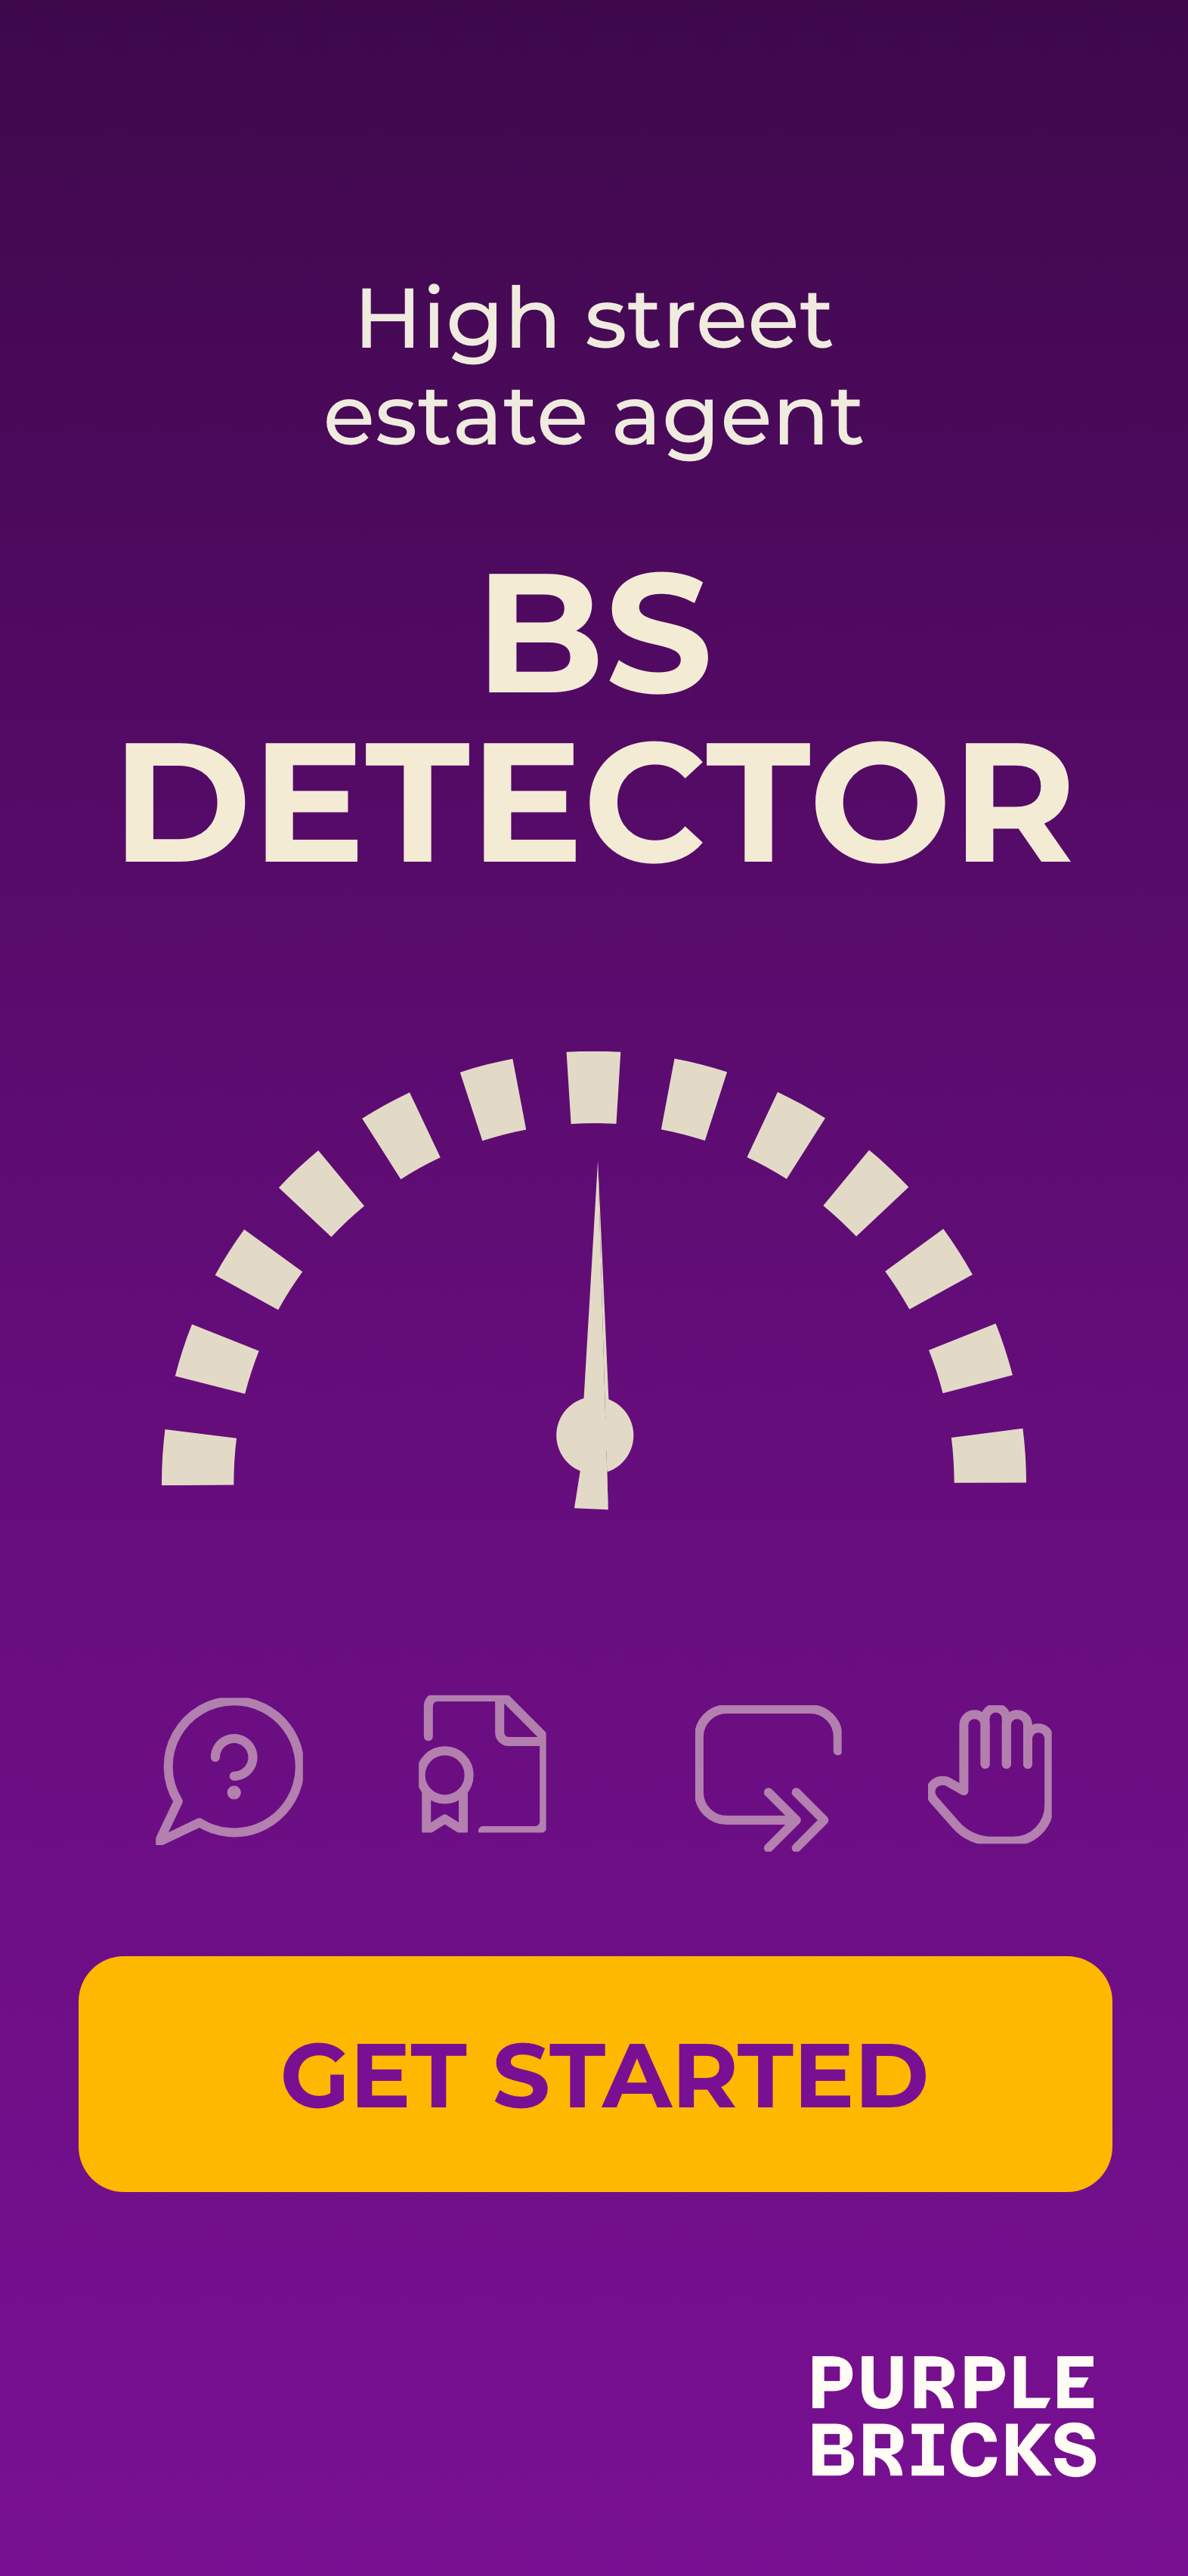 Download Purplebricks BS Detector App